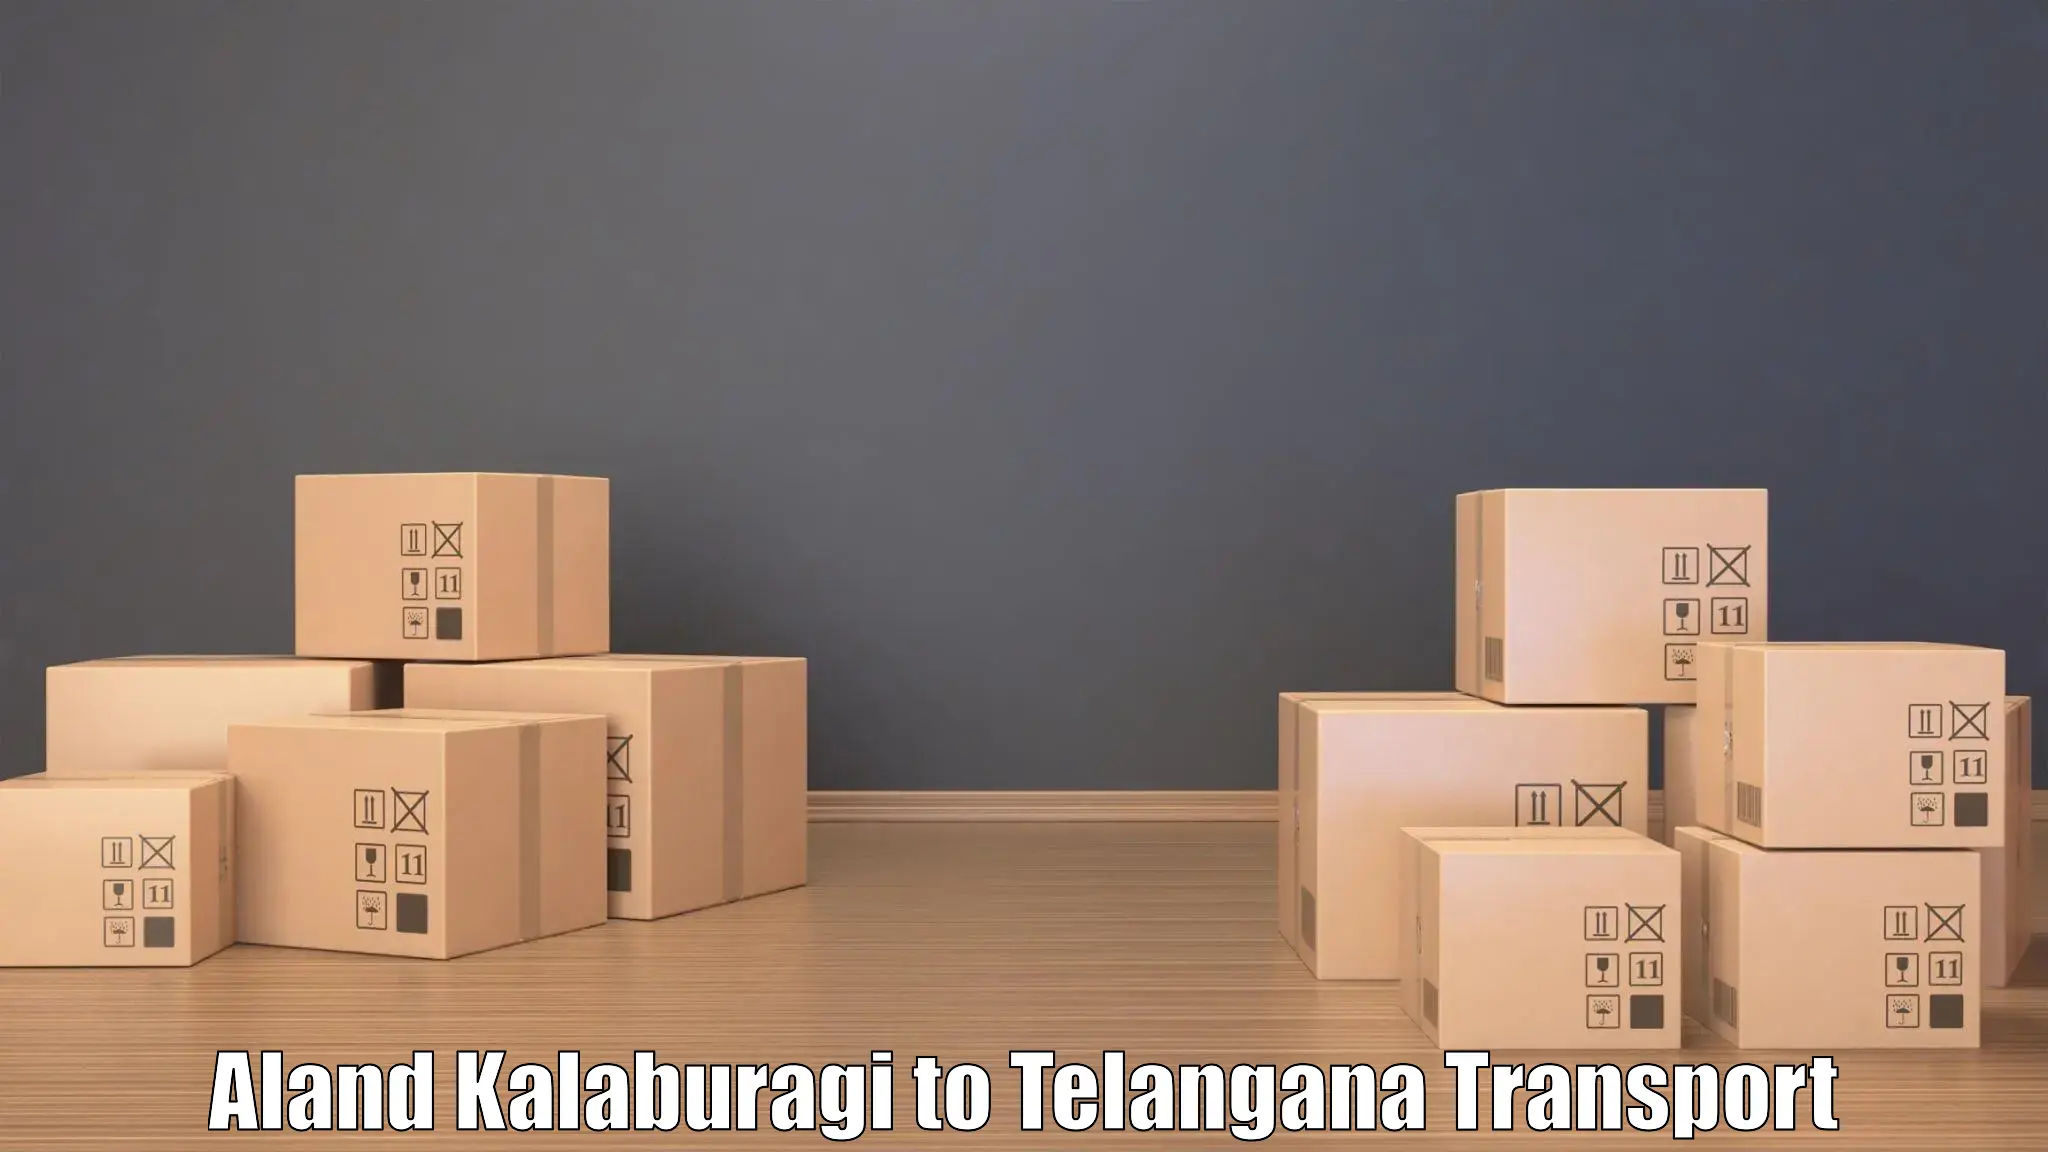 Express transport services Aland Kalaburagi to Jannaram